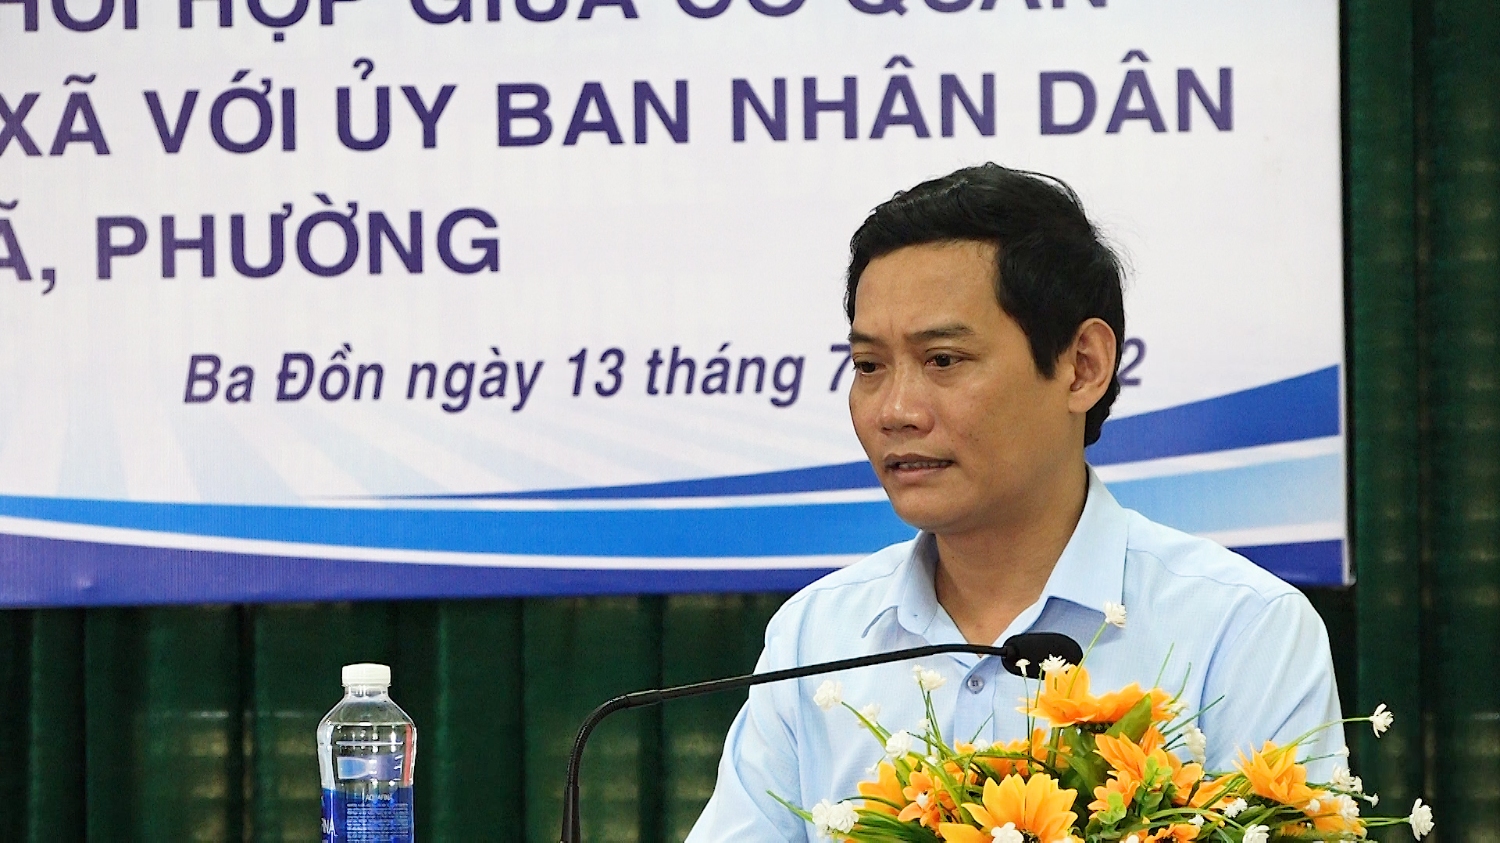 đồng chí Nguyễn Văn Tình – Thị ủy viên, PCT UBND thị xã phát biểu tại hội nghị